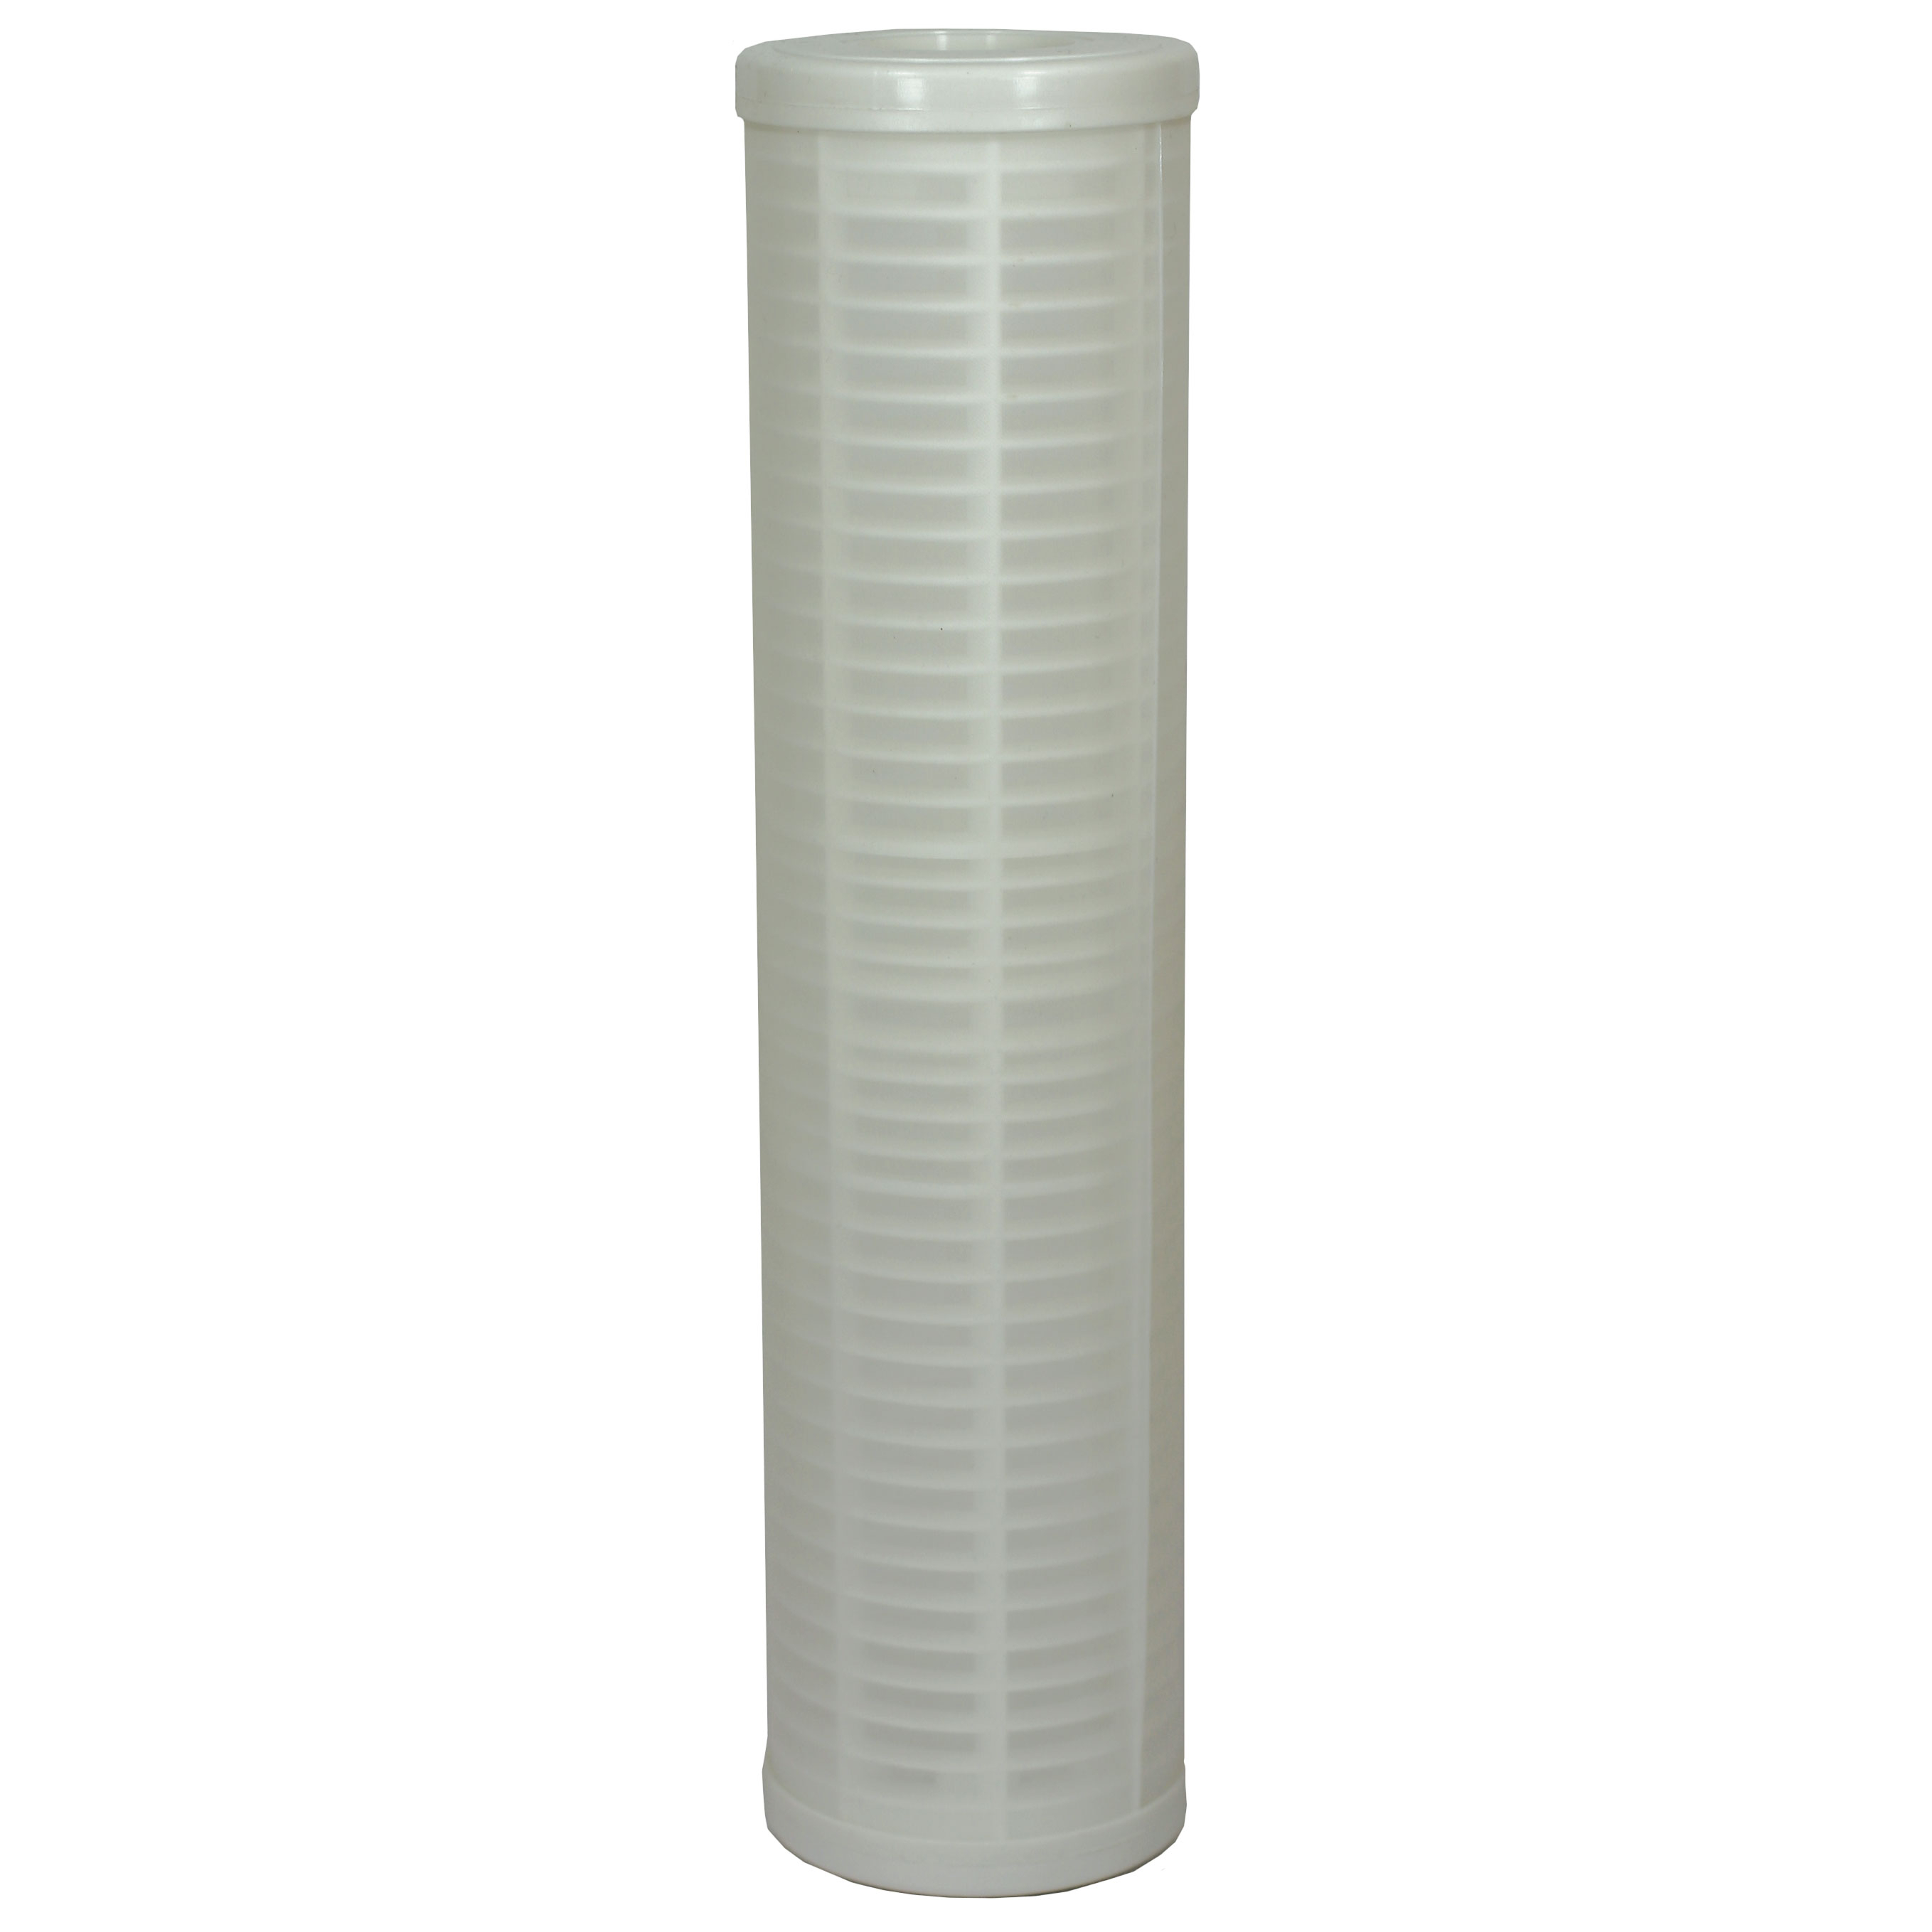 Cartouche filtrante en PVC lavable, filtration 150 Micron - Filtre 5 - Hauteur 128 mm